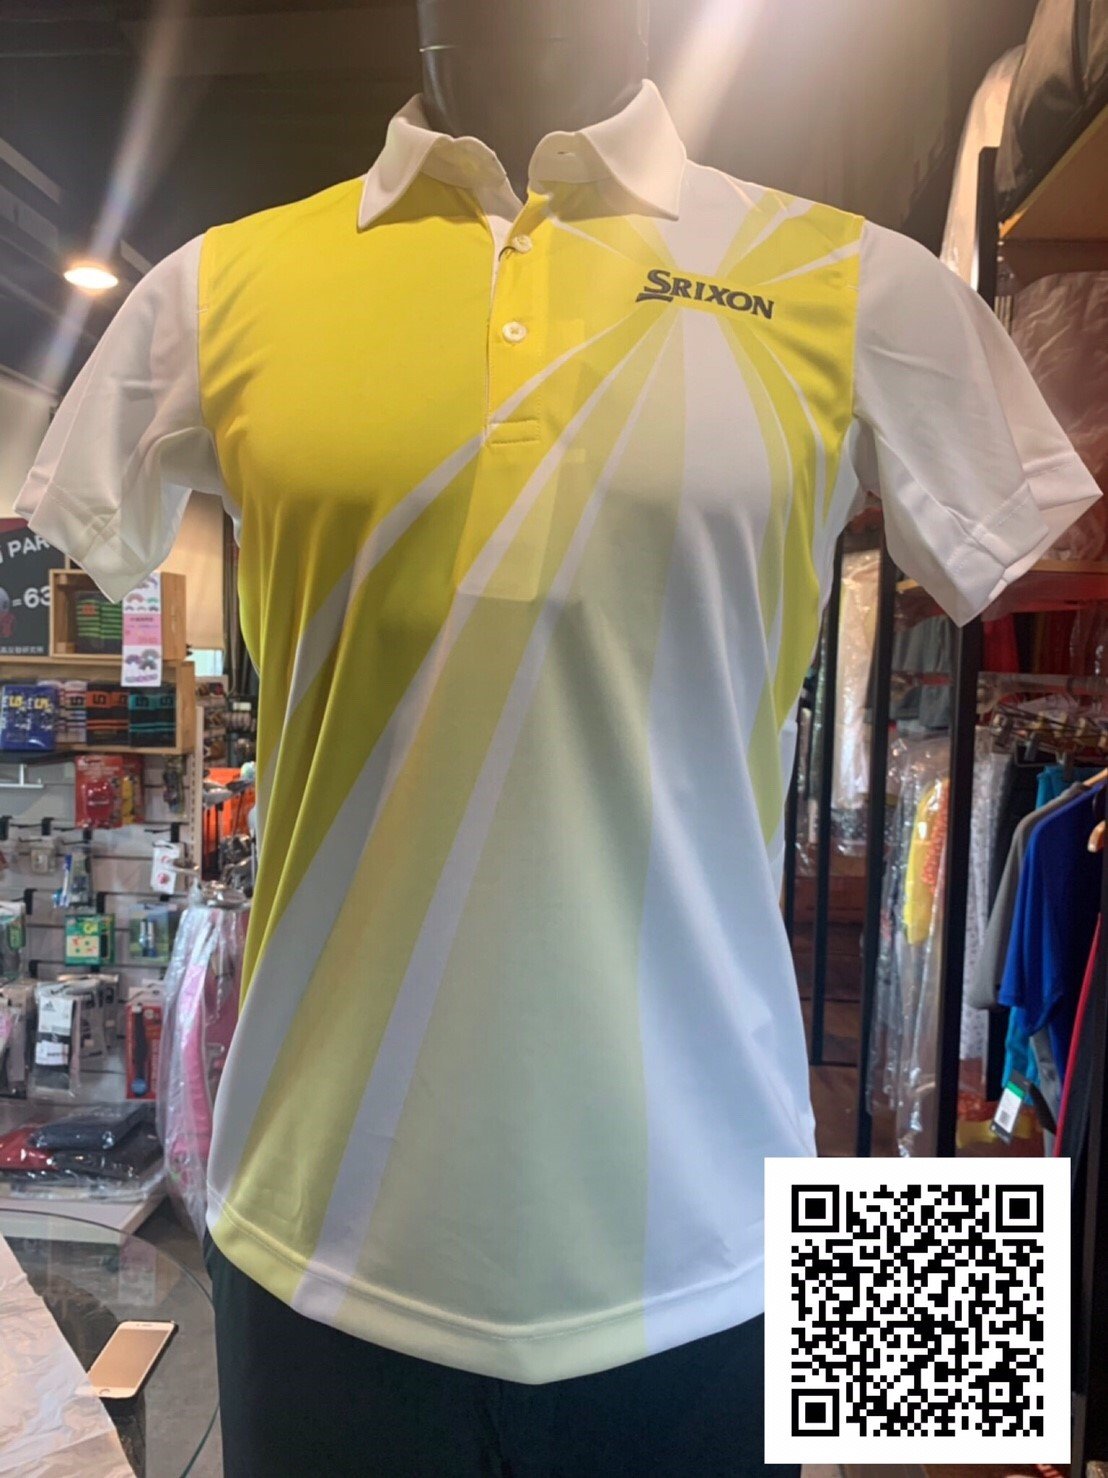 全新 日本 SRIXON 高爾夫 POLO衫  白黃款  DESCENTE日本製造  吸水速乾 抗熱效果佳 防曬抗UV